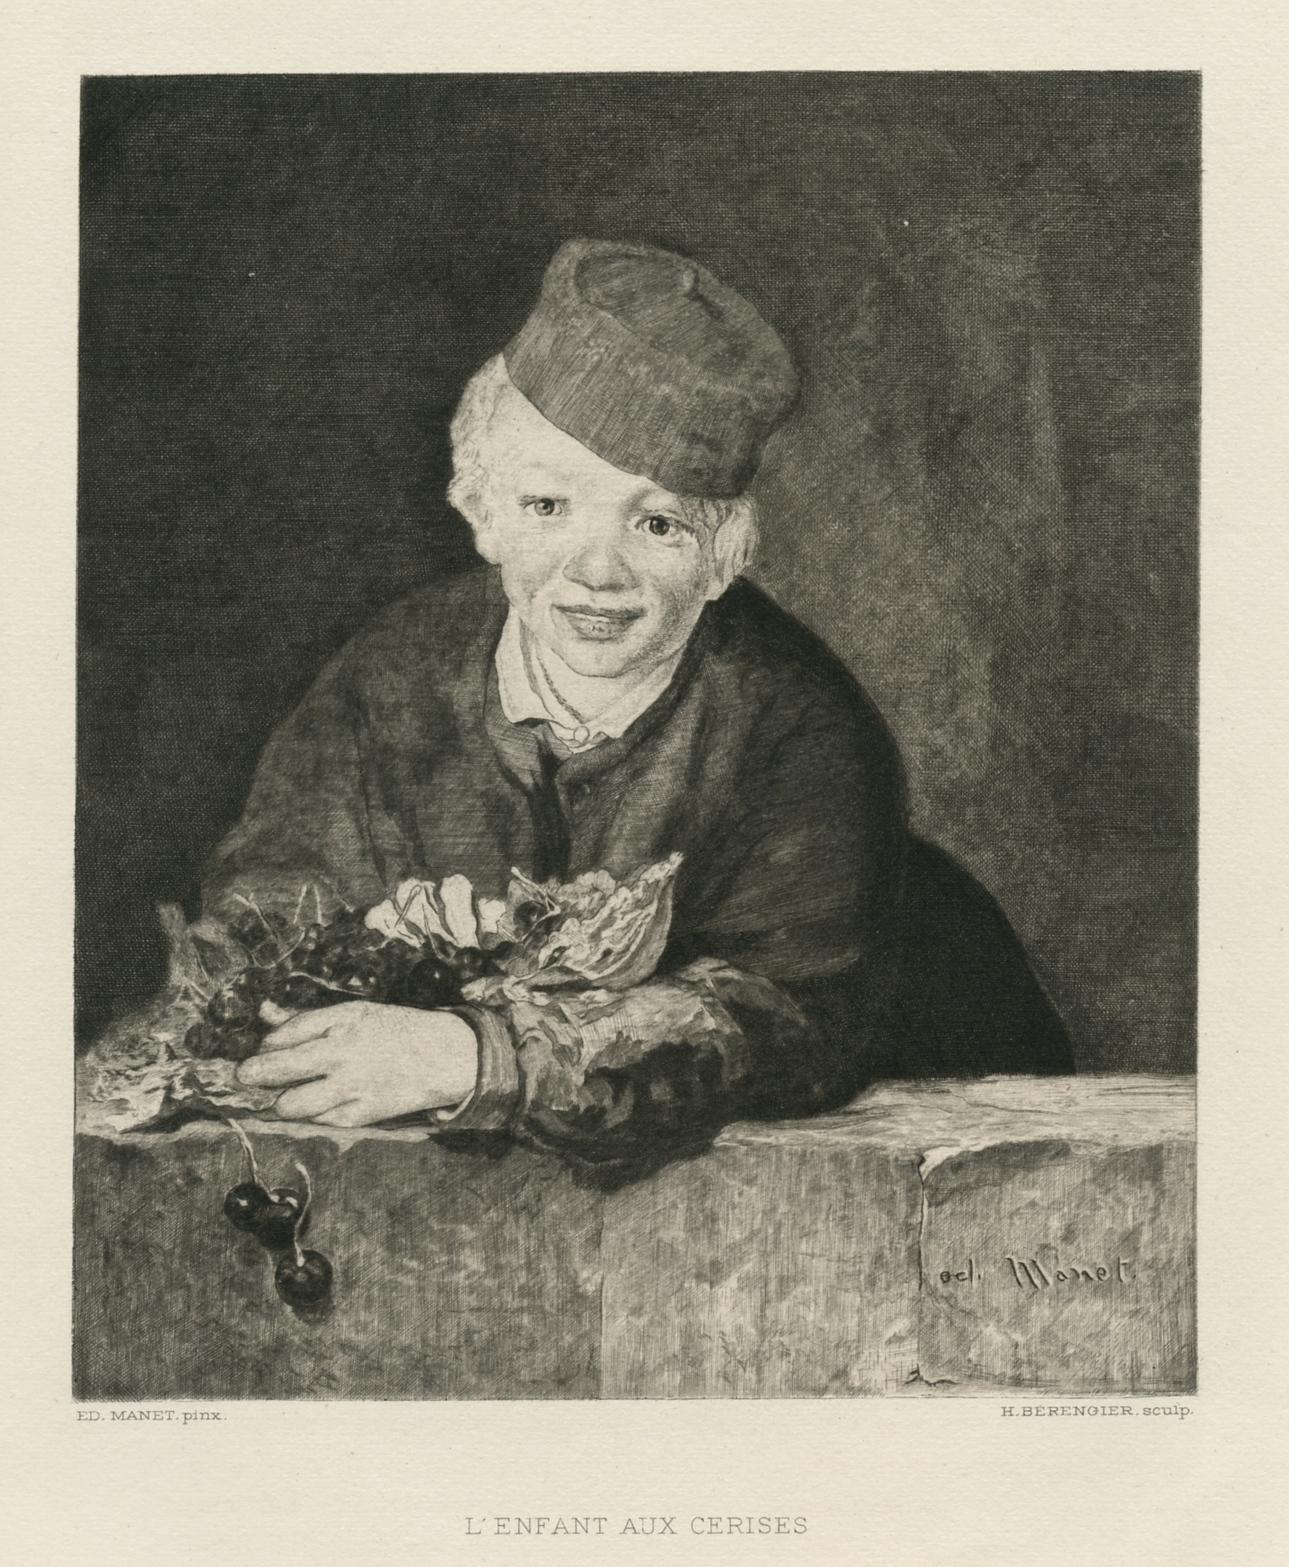 Medium: Kupferstich (nach dem Gemälde). Kupferstich des französischen Künstlers Henri Bérengier (1881-1943) nach einem Gemälde von Manet. Gedruckt im Jahr 1910 auf BFK Rives-Papier mit Wasserzeichen und veröffentlicht in Paris von der Revue de l'art